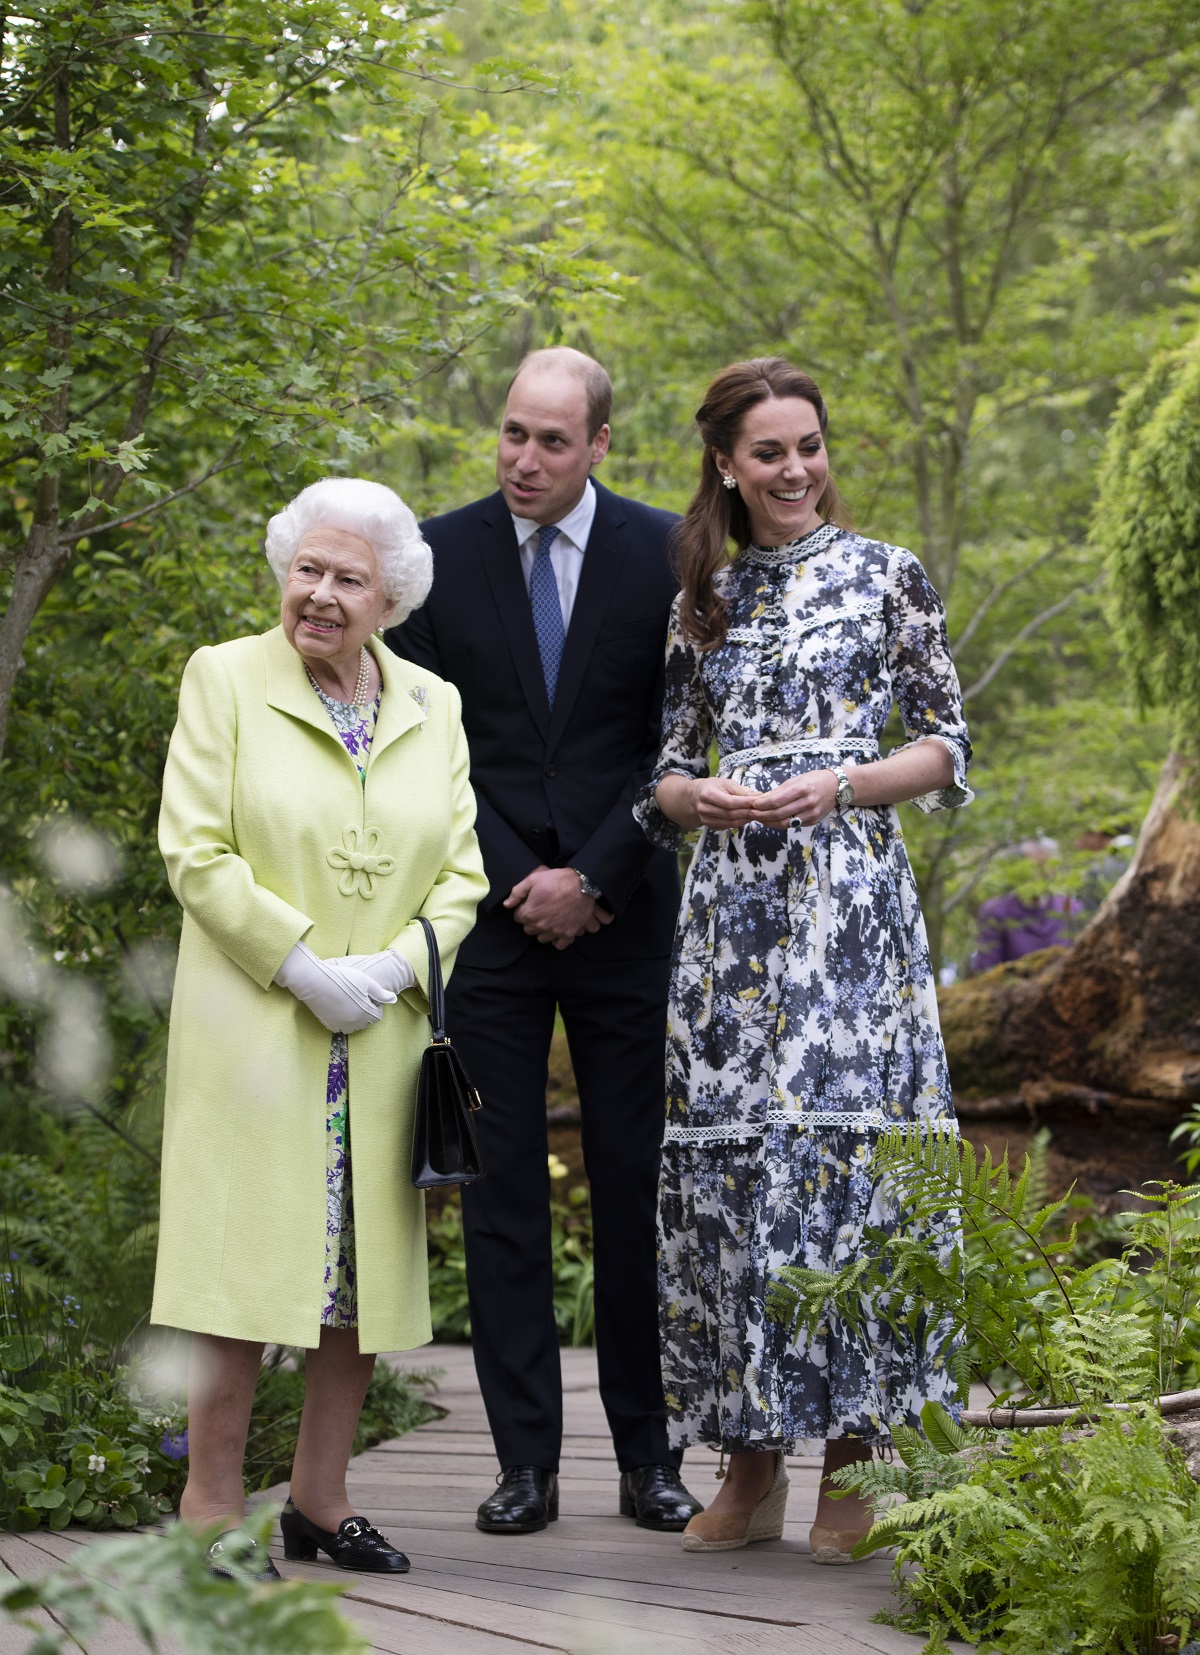 Regina Elisabeta purtând un costum galben alături de Prințul William la costum negru și Ducesa de Cambridge, Kate Middleton, îmbrăcată într-o rochie albă cu imprimeu floral în timp ce se plimbă pe aleea unei grădini botanice